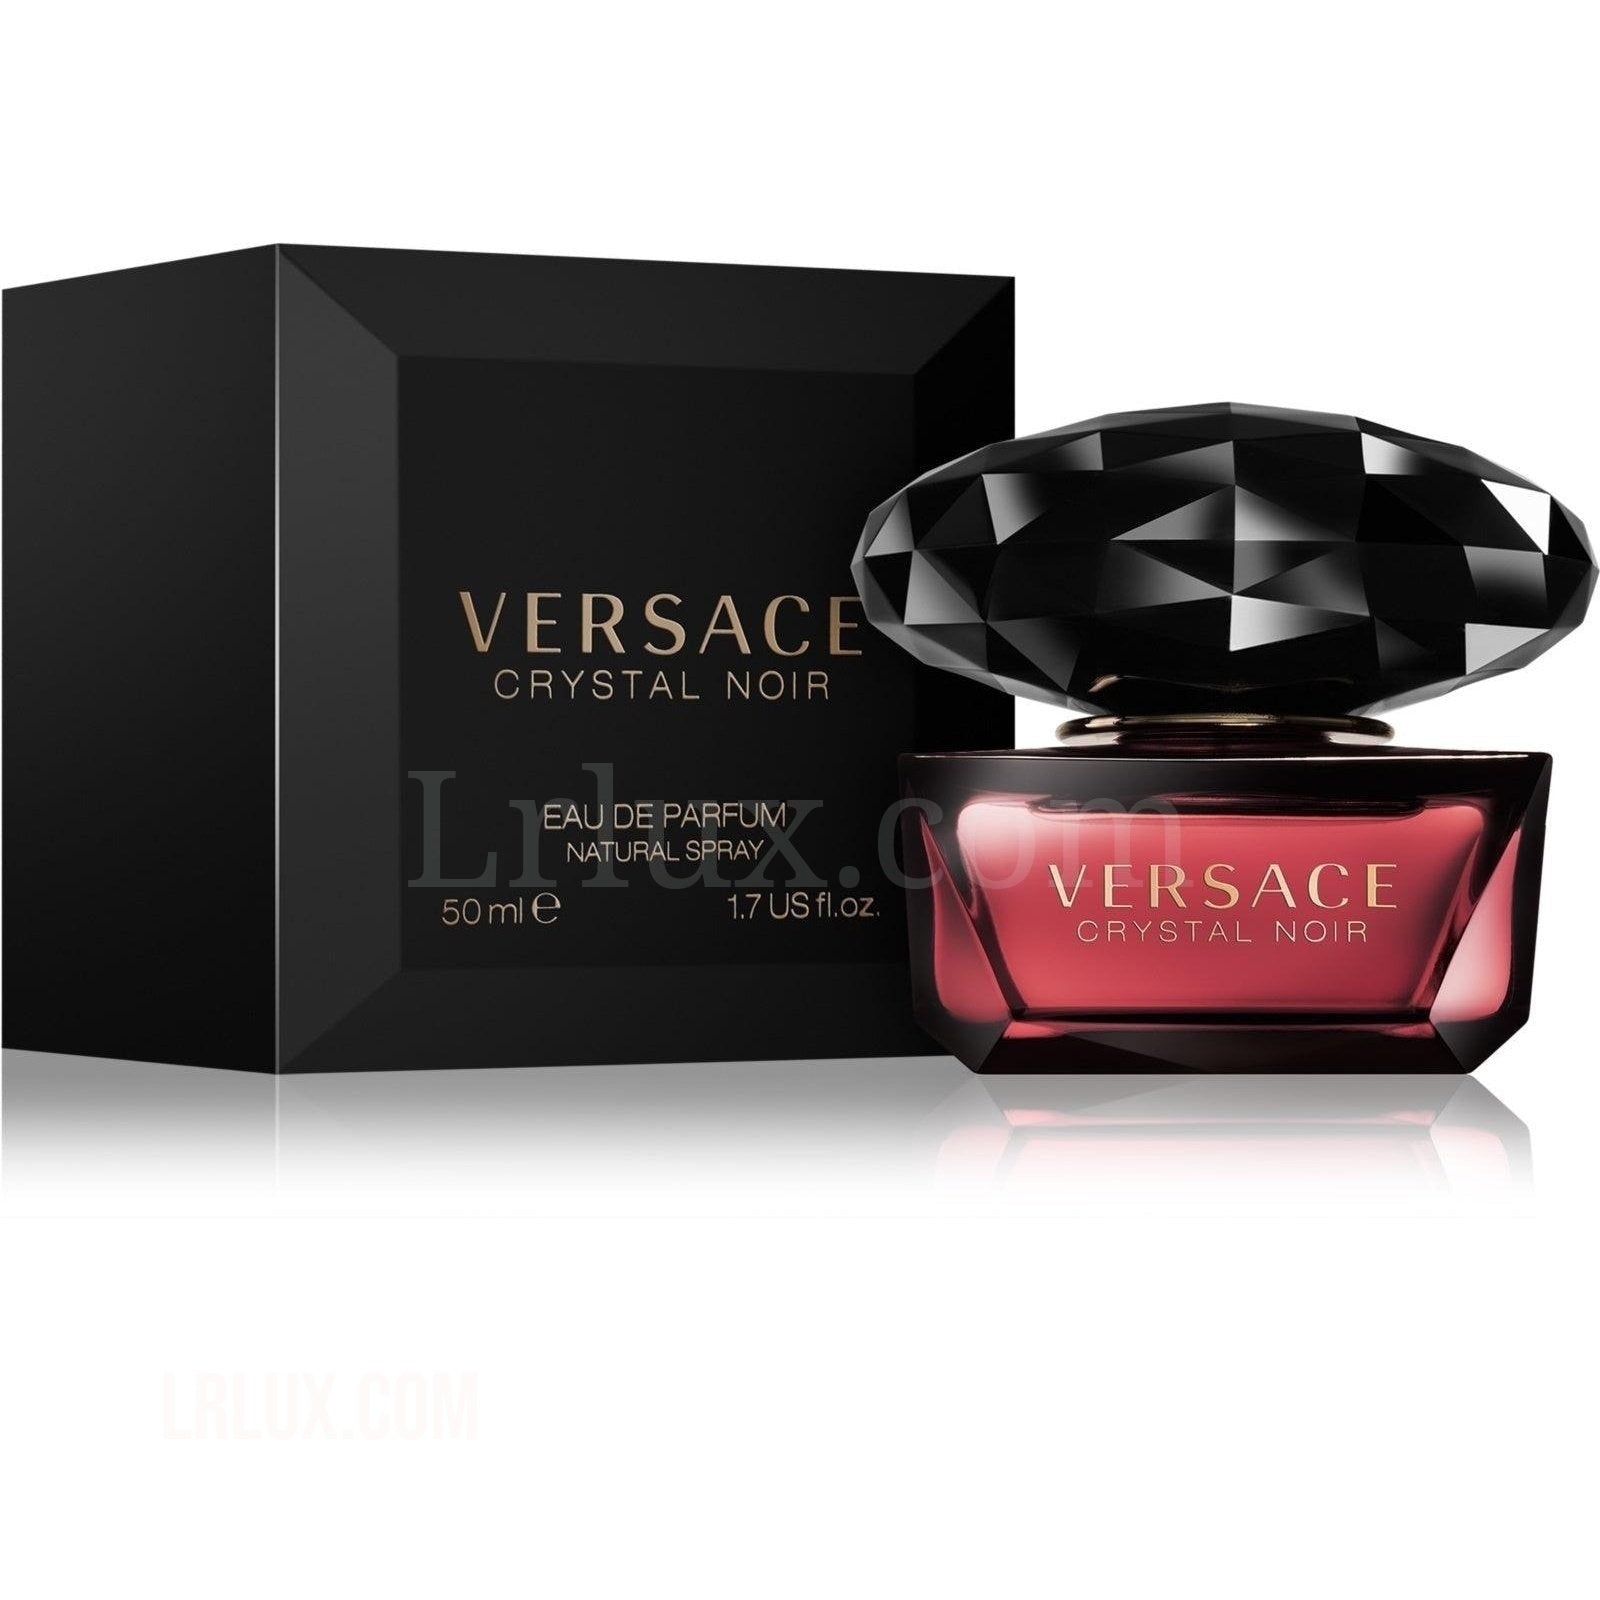 Versace Crystal Noir eau de toilette for Women - Lrlux.com